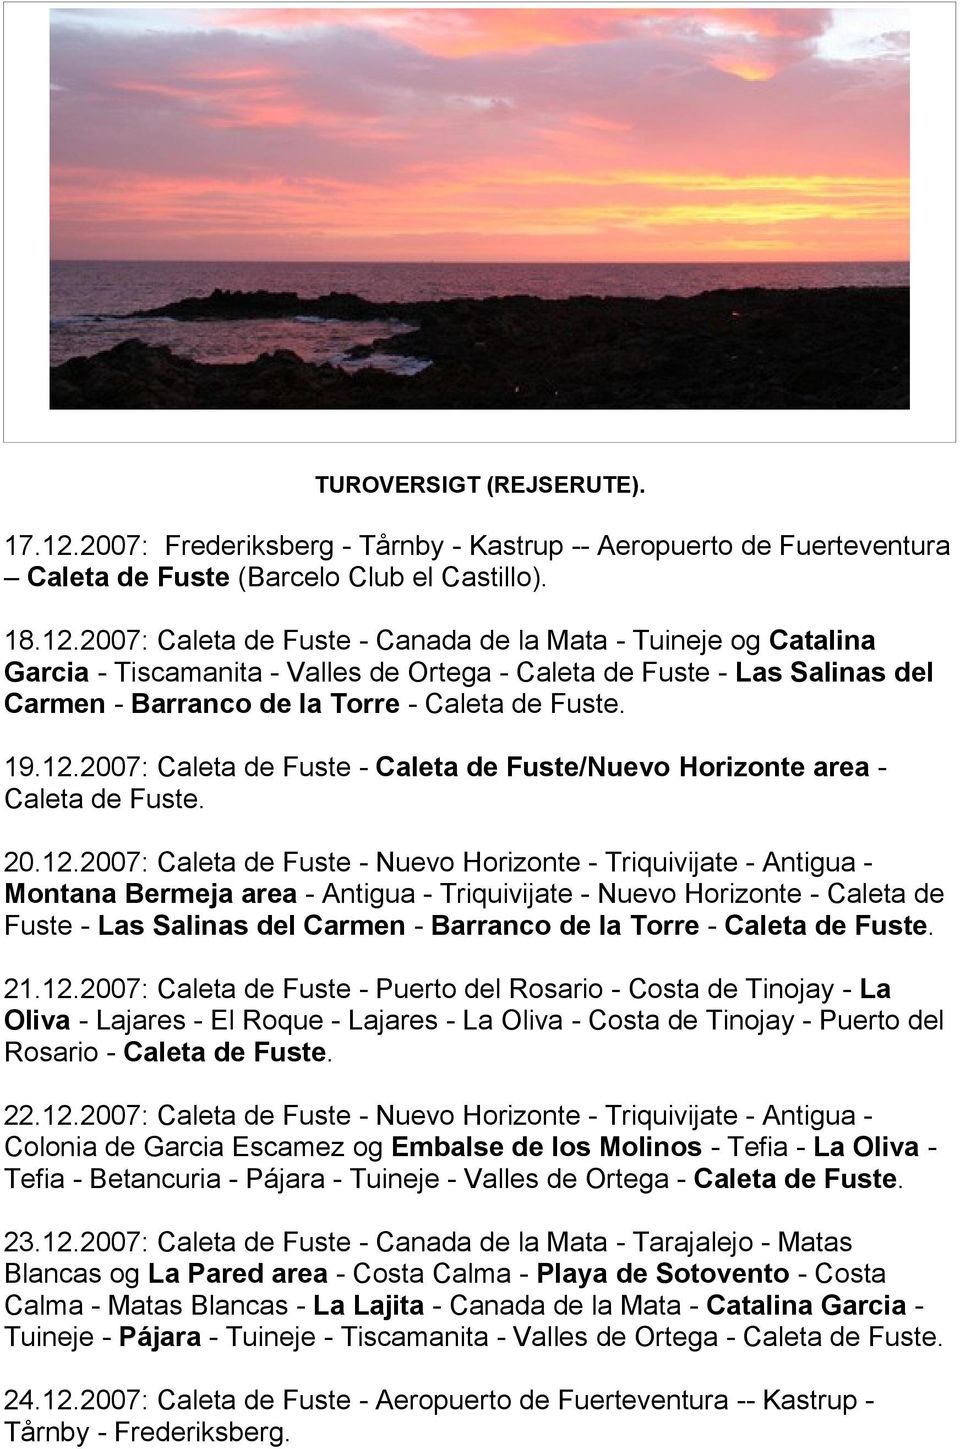 2007: Caleta de Fuste - Canada de la Mata - Tuineje og Catalina Garcia - Tiscamanita - Valles de Ortega - Caleta de Fuste - Las Salinas del Carmen - Barranco de la Torre - Caleta de Fuste. 19.12.